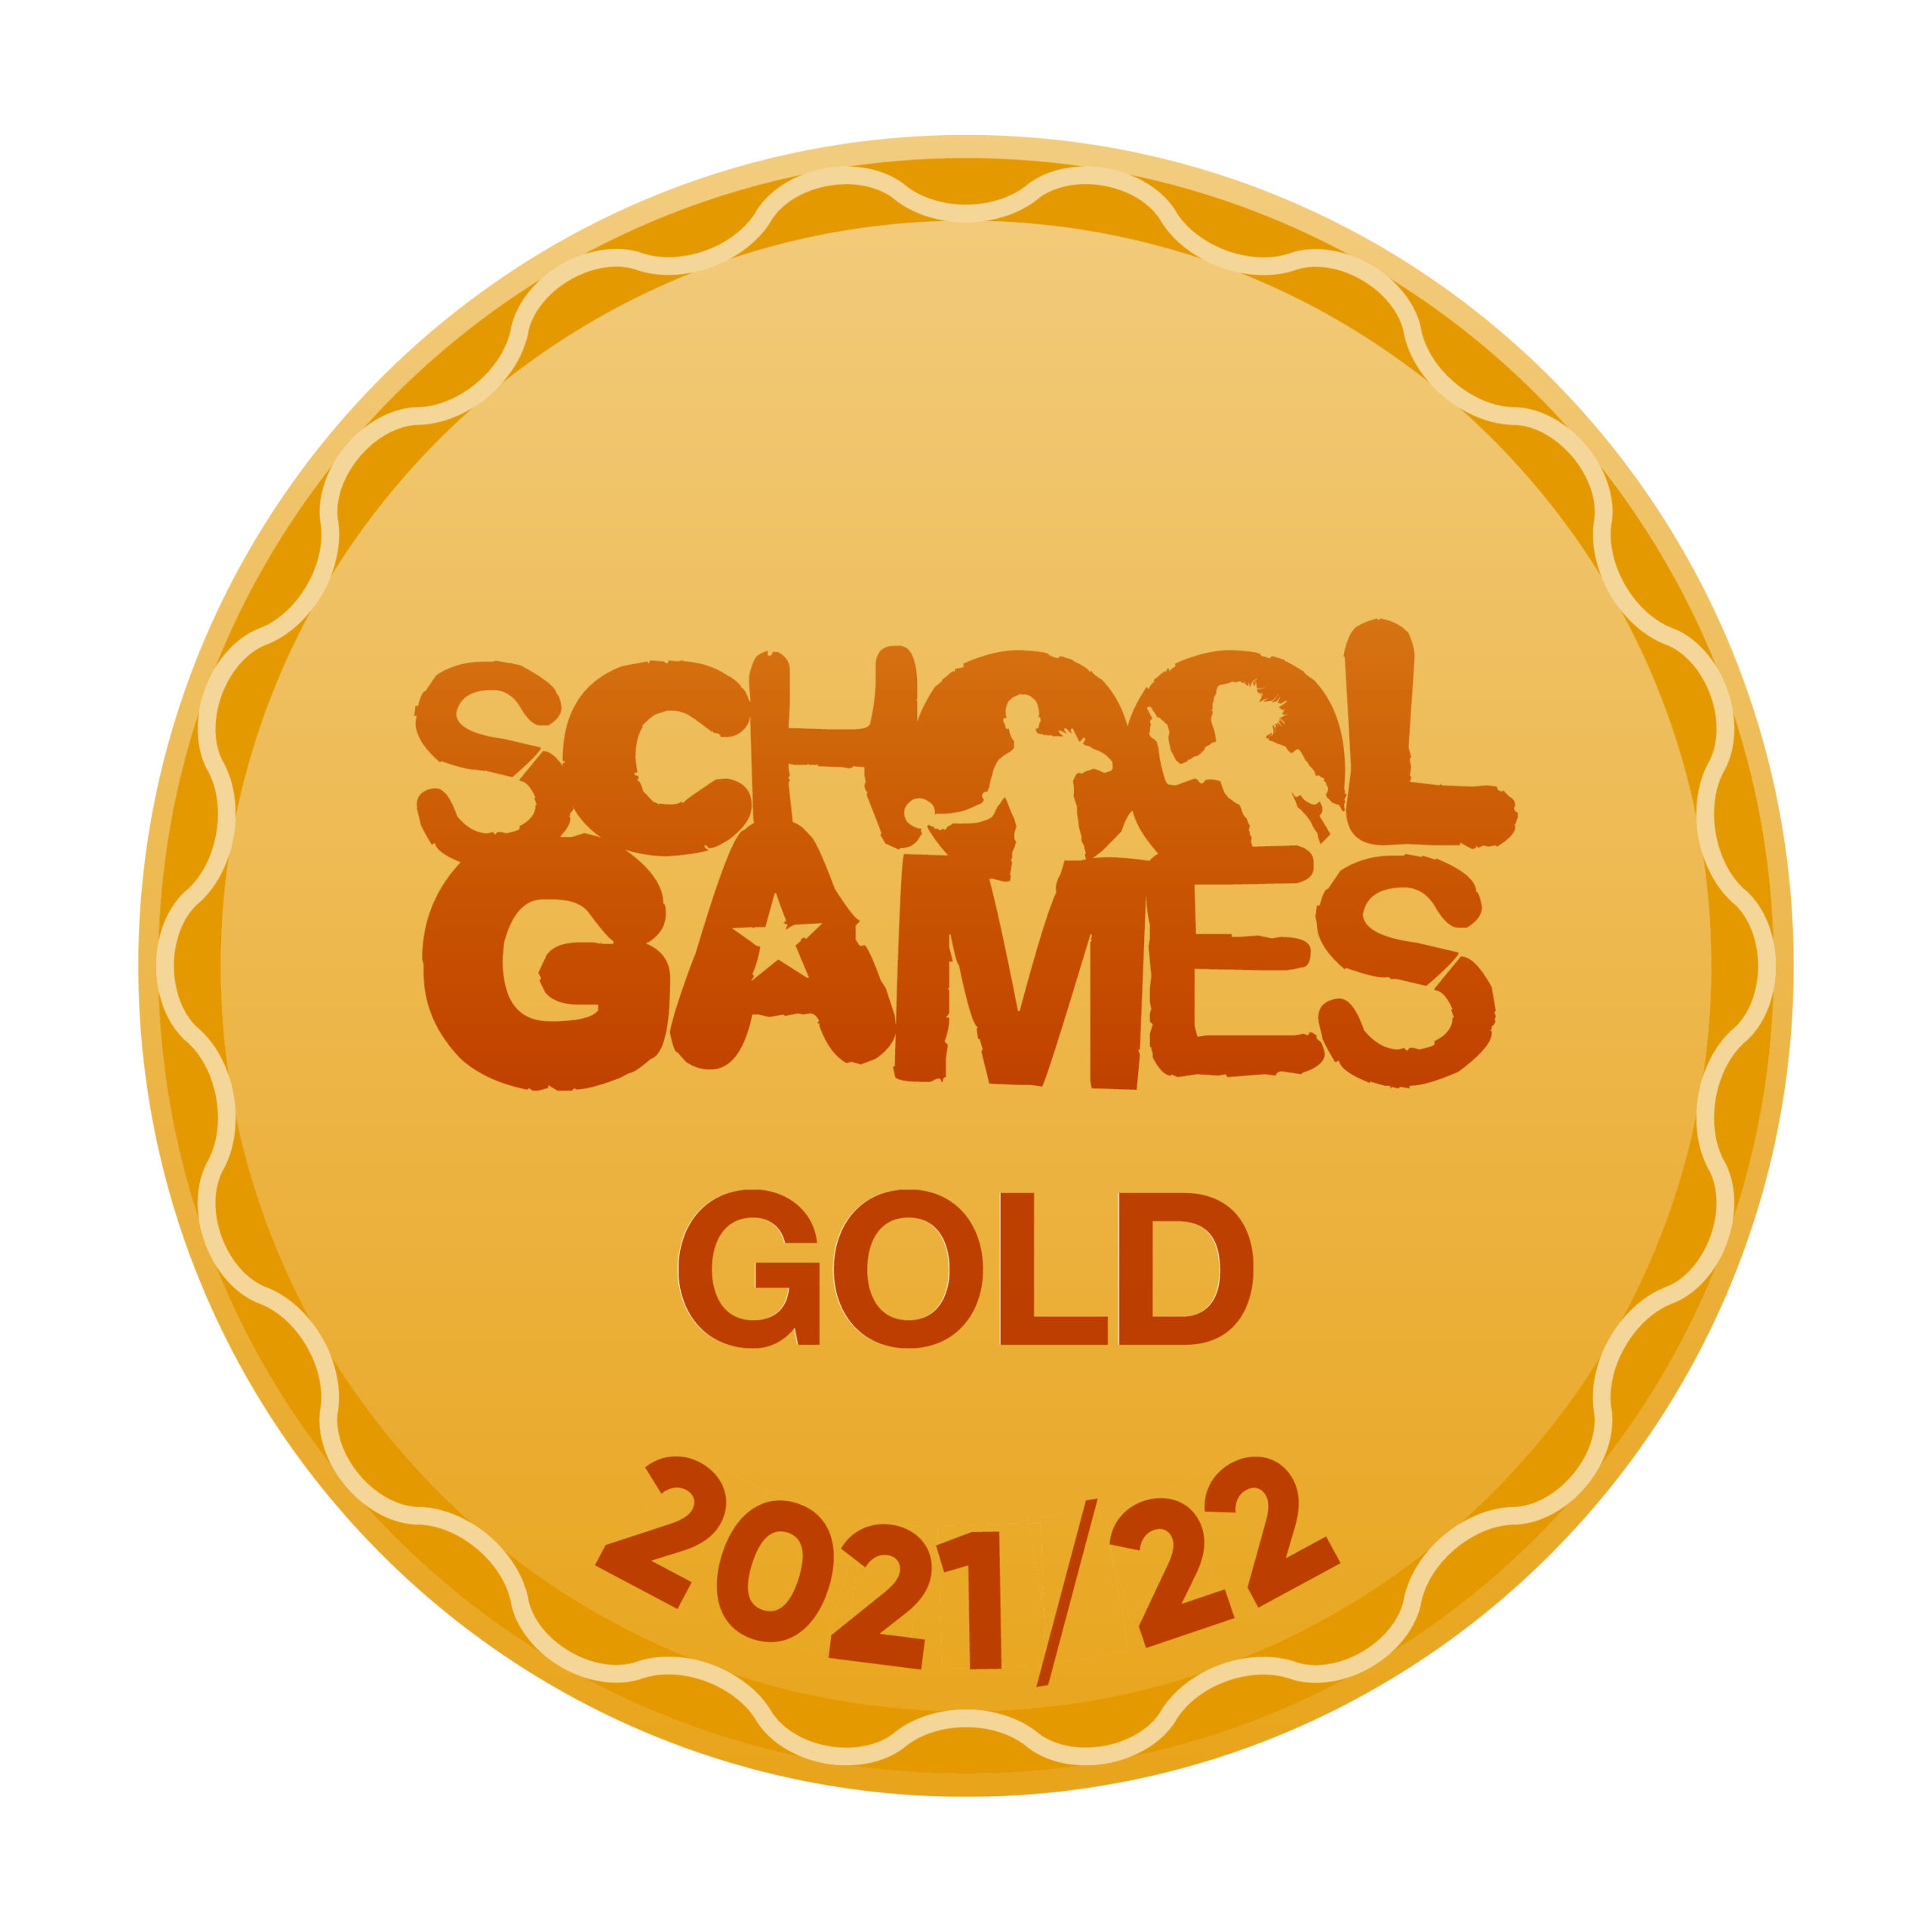 School Games Gold 2021-22